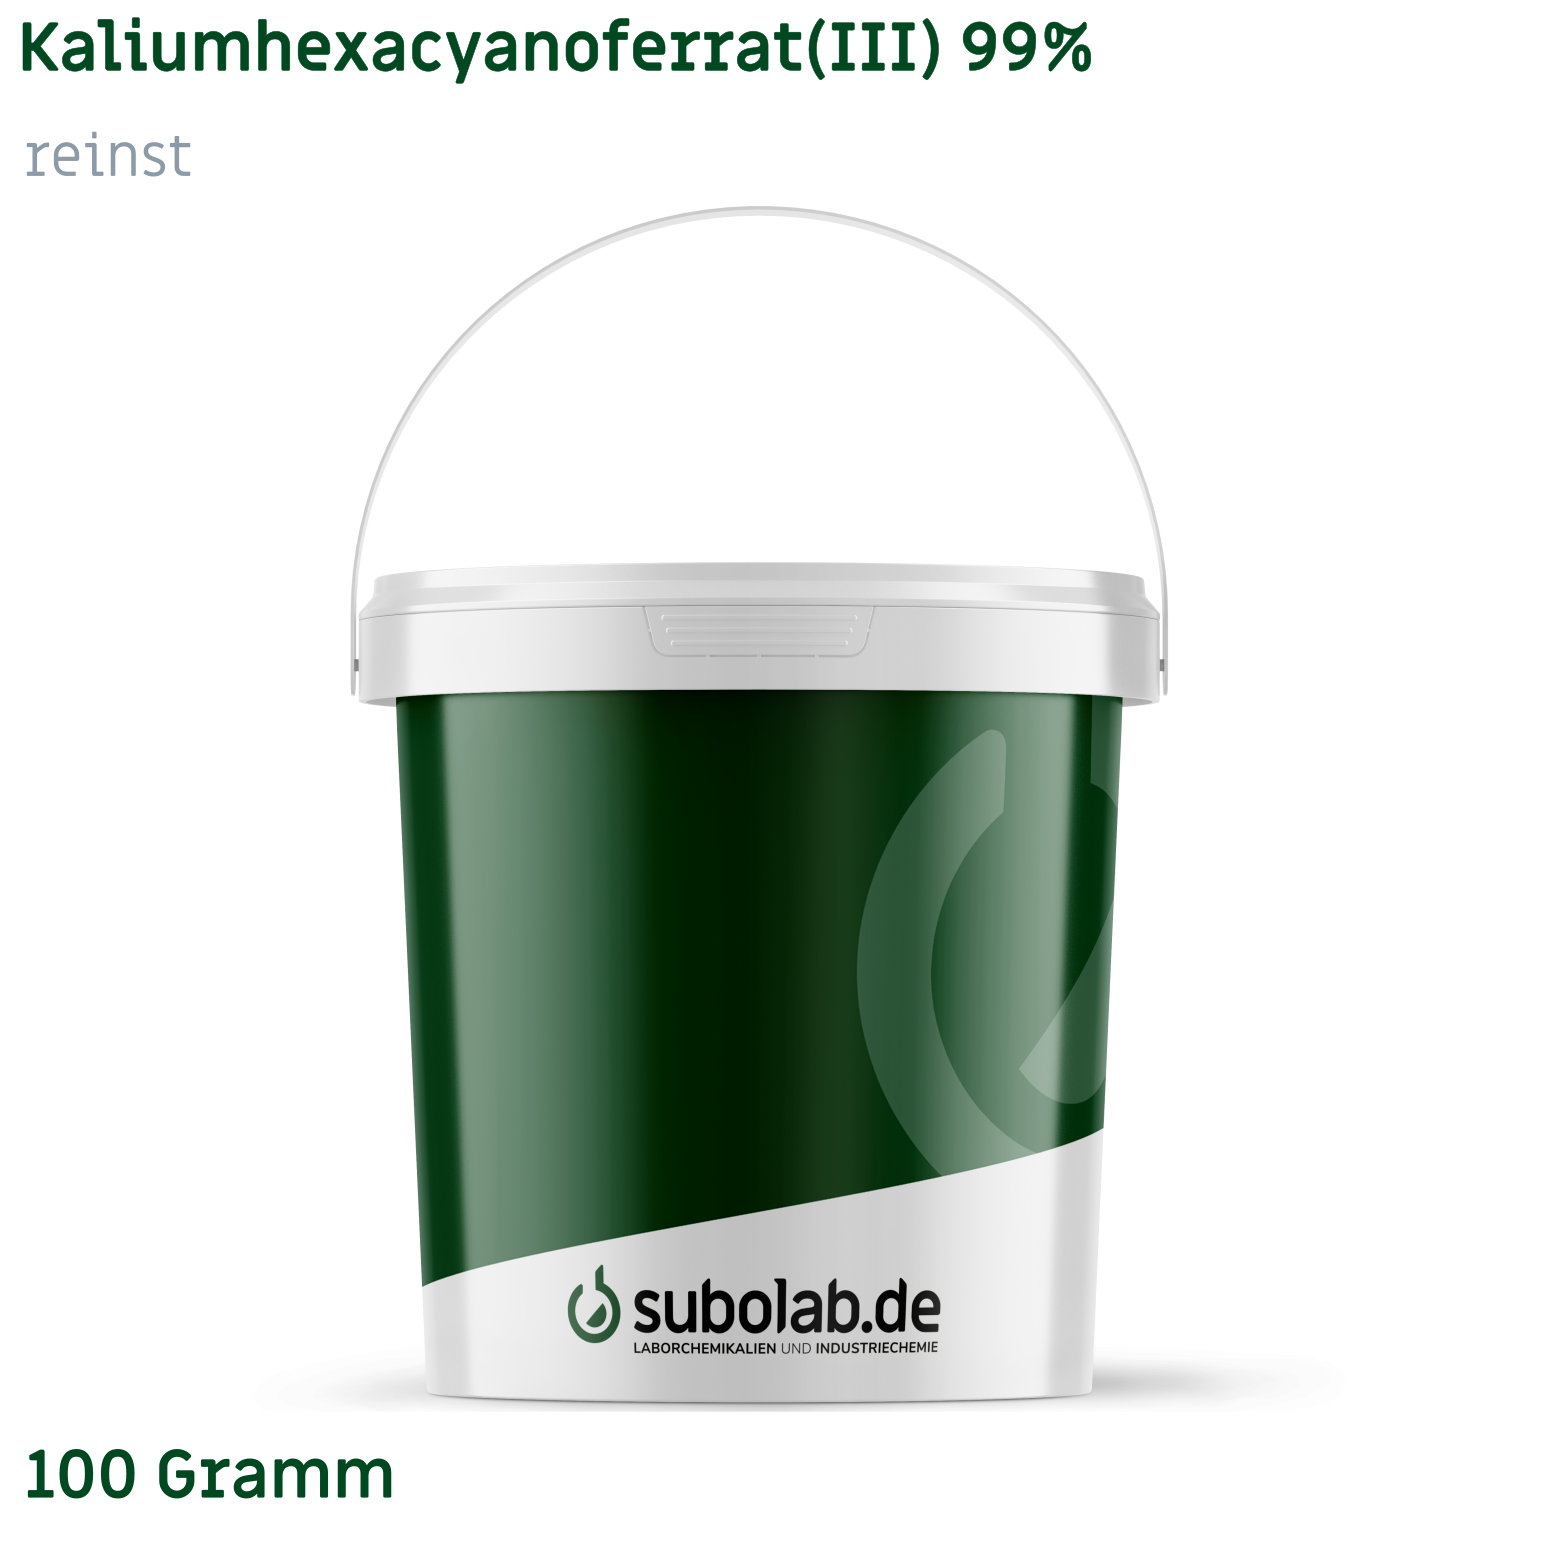 Bild von Kaliumhexacyanoferrat(III) 99% reinst (100 Gramm)